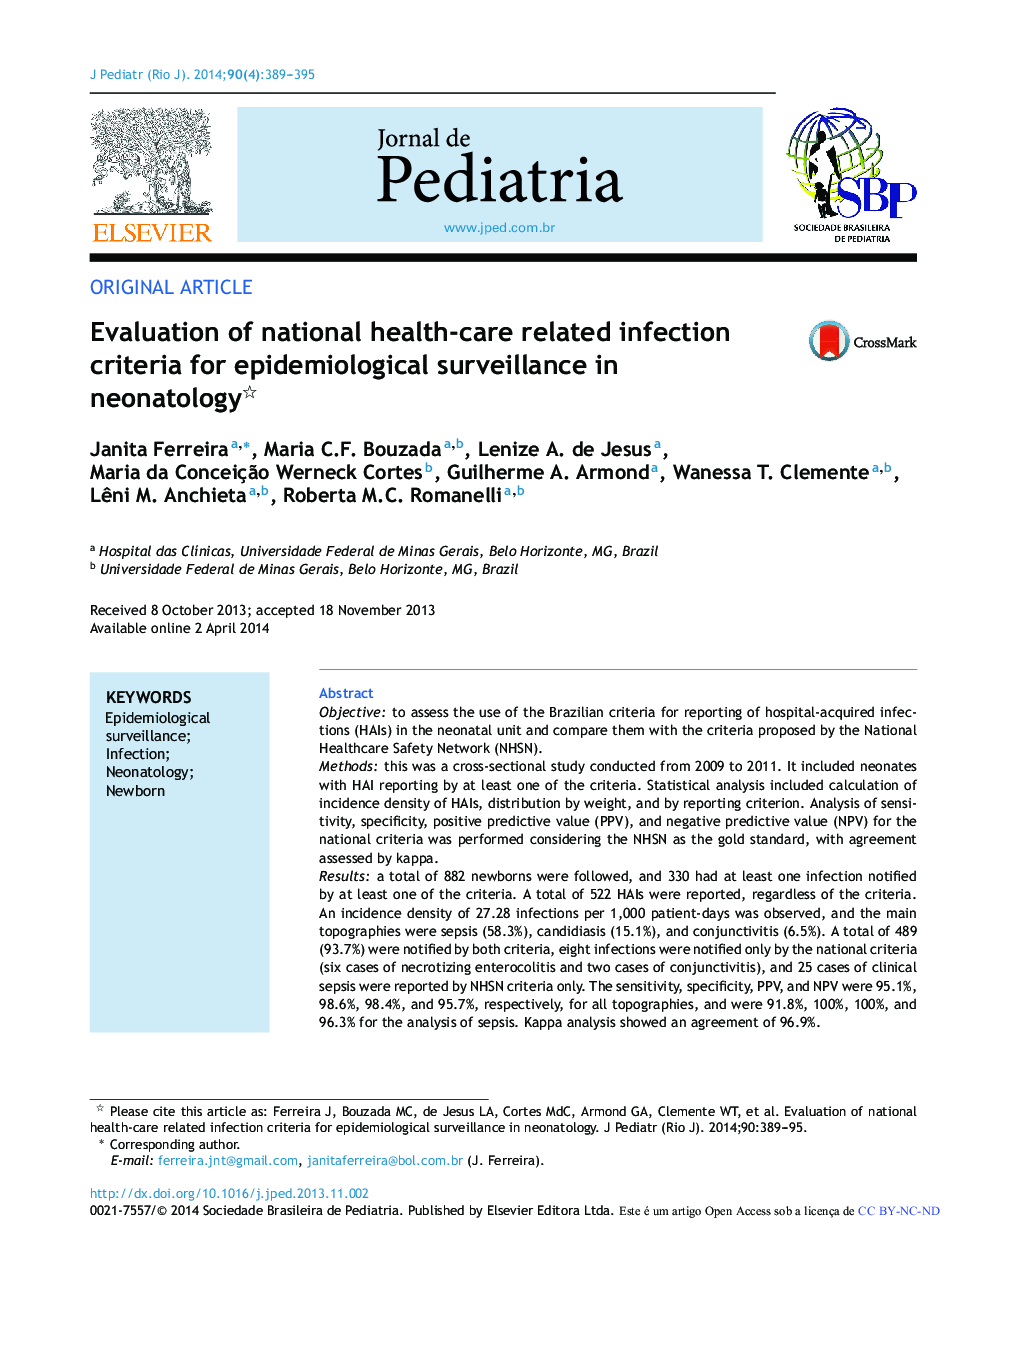 ارزیابی معیارهای عفونت مربوط به مراقبت های بهداشتی ملی در نظارت اپیدمیولوژیک در نوزادان 